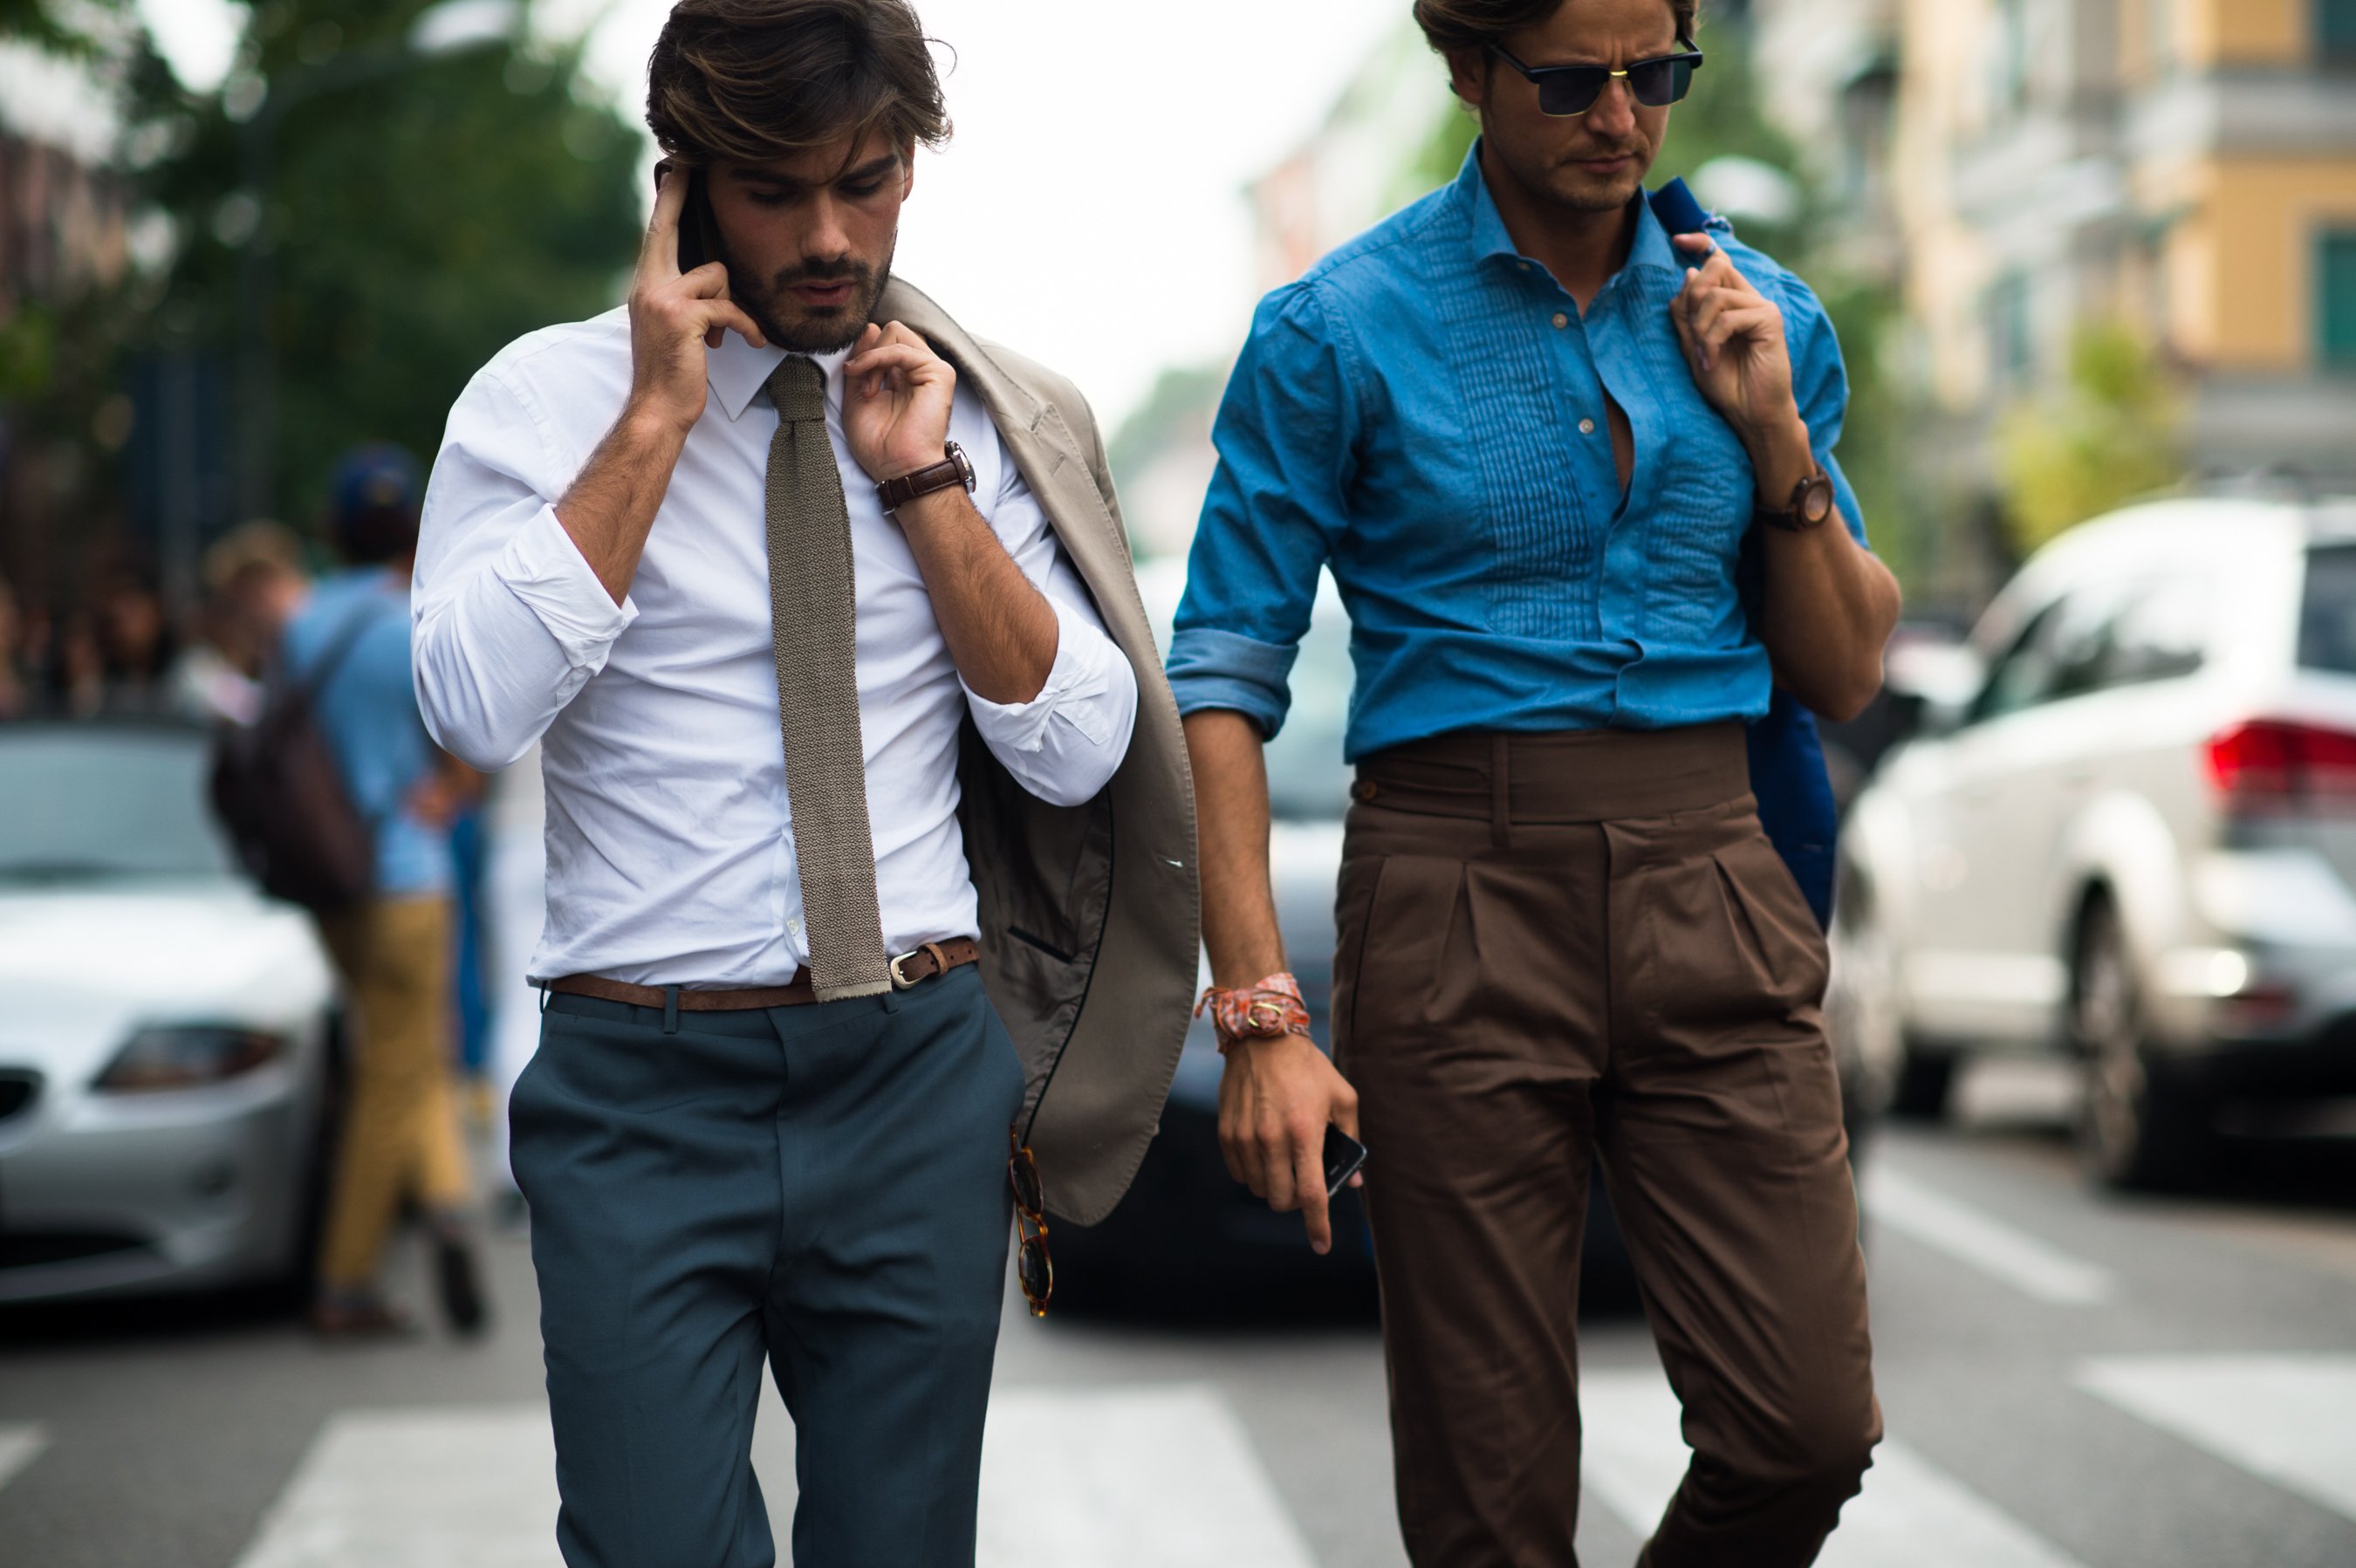 Муж одел. Итальянский стрит стайл мужской. Стрит стайл мужчины итальянцы. Итальянский стиль мужской одежды. Итальянский стиль для мужчин.